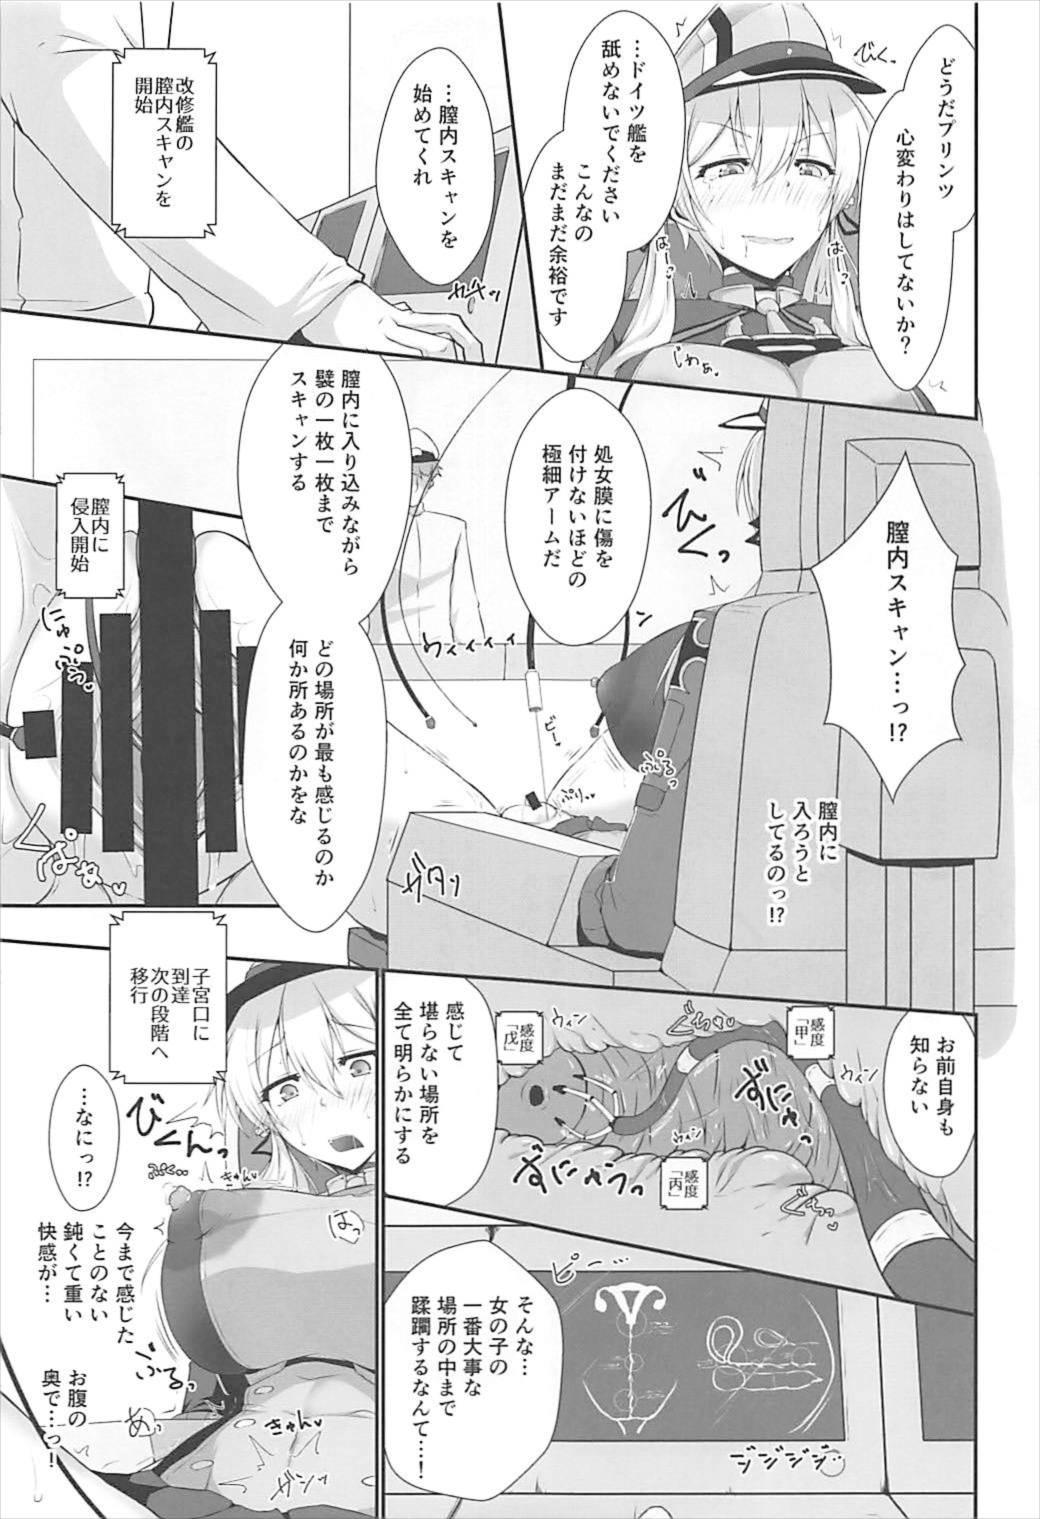 18yo Doitsukan wa Kikaikan ni Kussuru Hazu ga Nain dakara! - Kantai collection Amateur Vids - Page 9